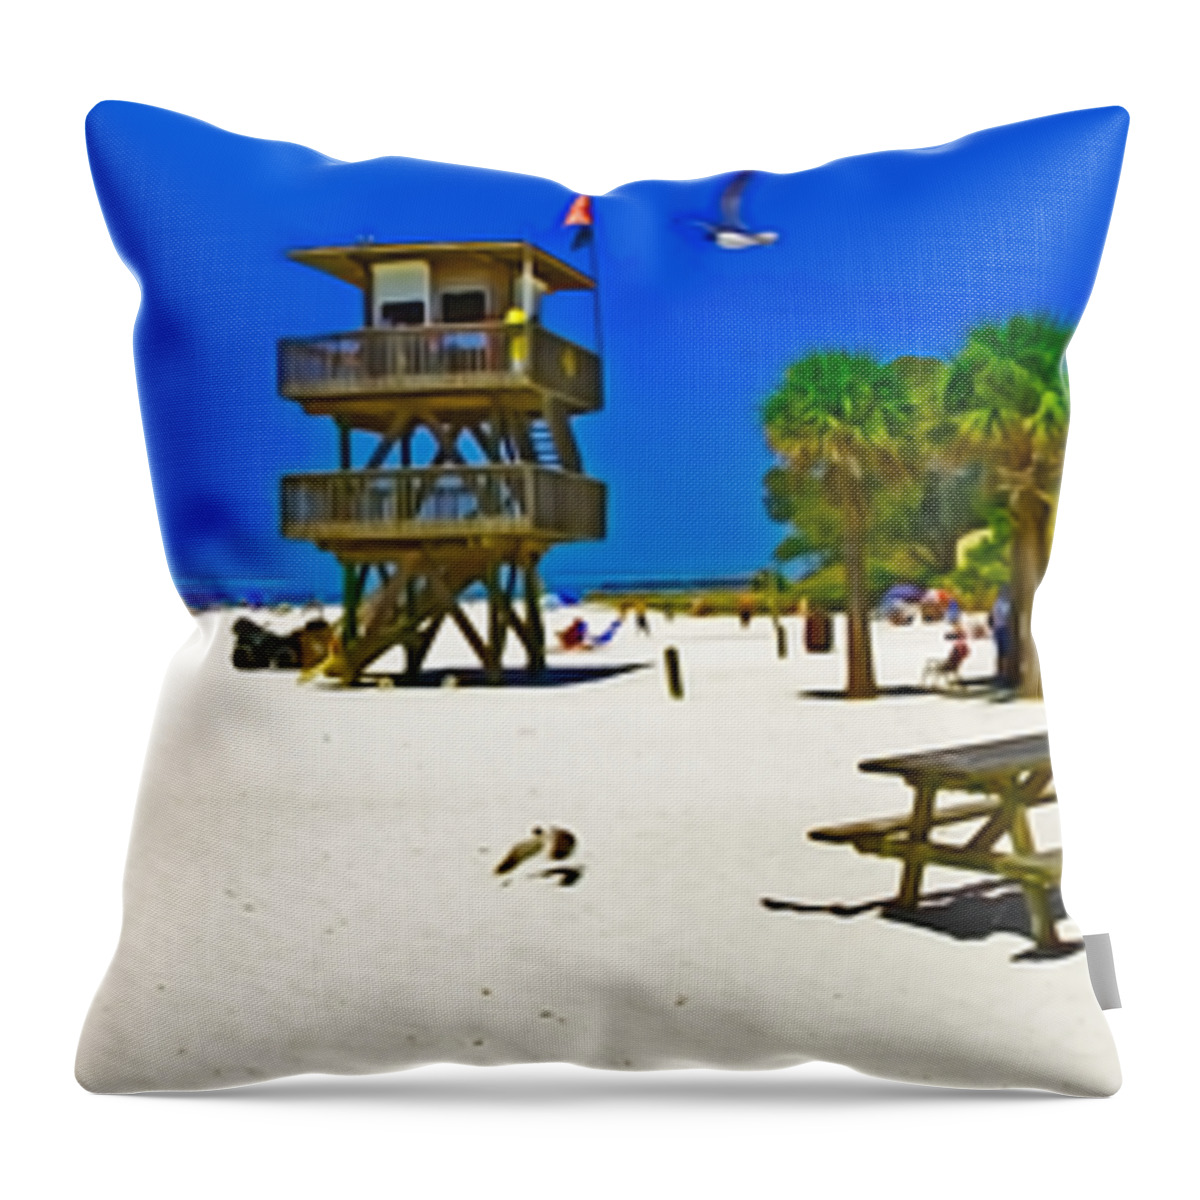 Rolf Bertram Throw Pillow featuring the photograph Manatee Beach Cafe by Rolf Bertram